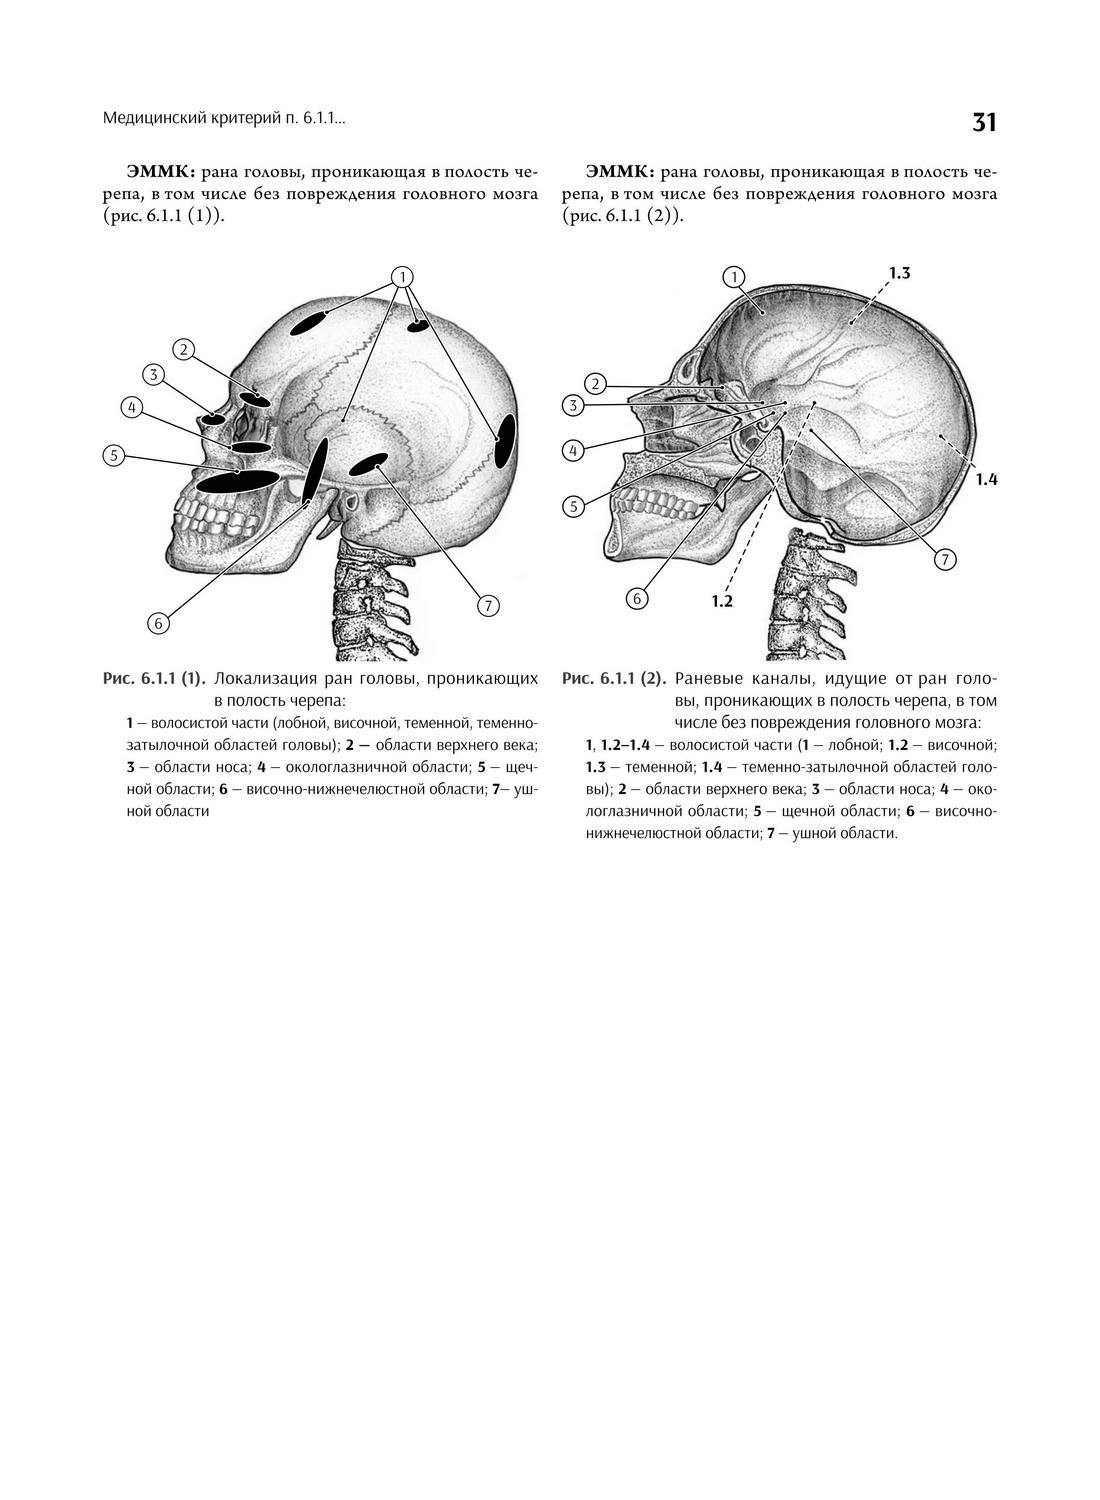 Рис. 6.1.1 (1). Локализация ран головы, проникающих в полость черепа